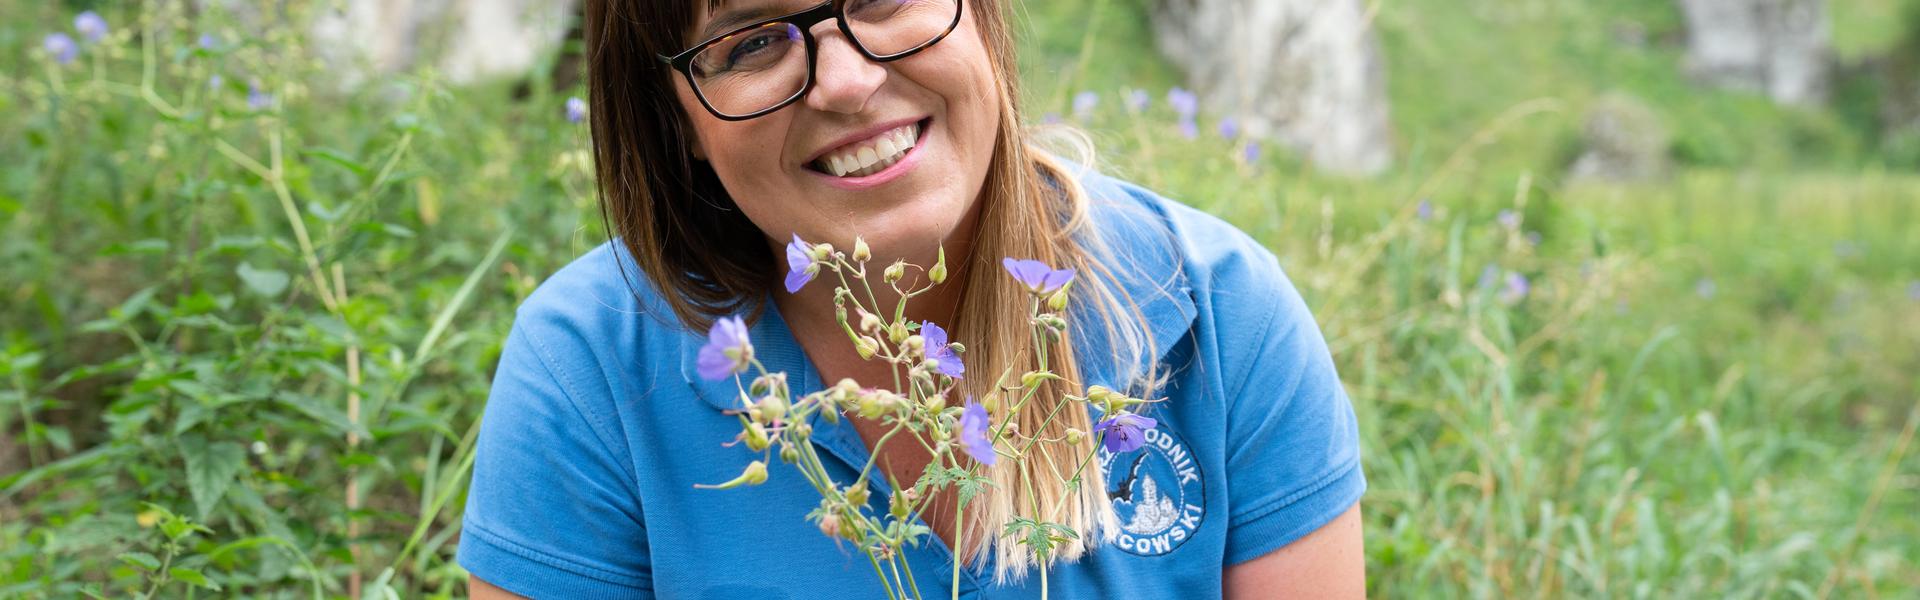 Uśmiechnięta kobieta w błękitnej koszulce z polnym kwiatem w ręce na tle skałek jurajskich